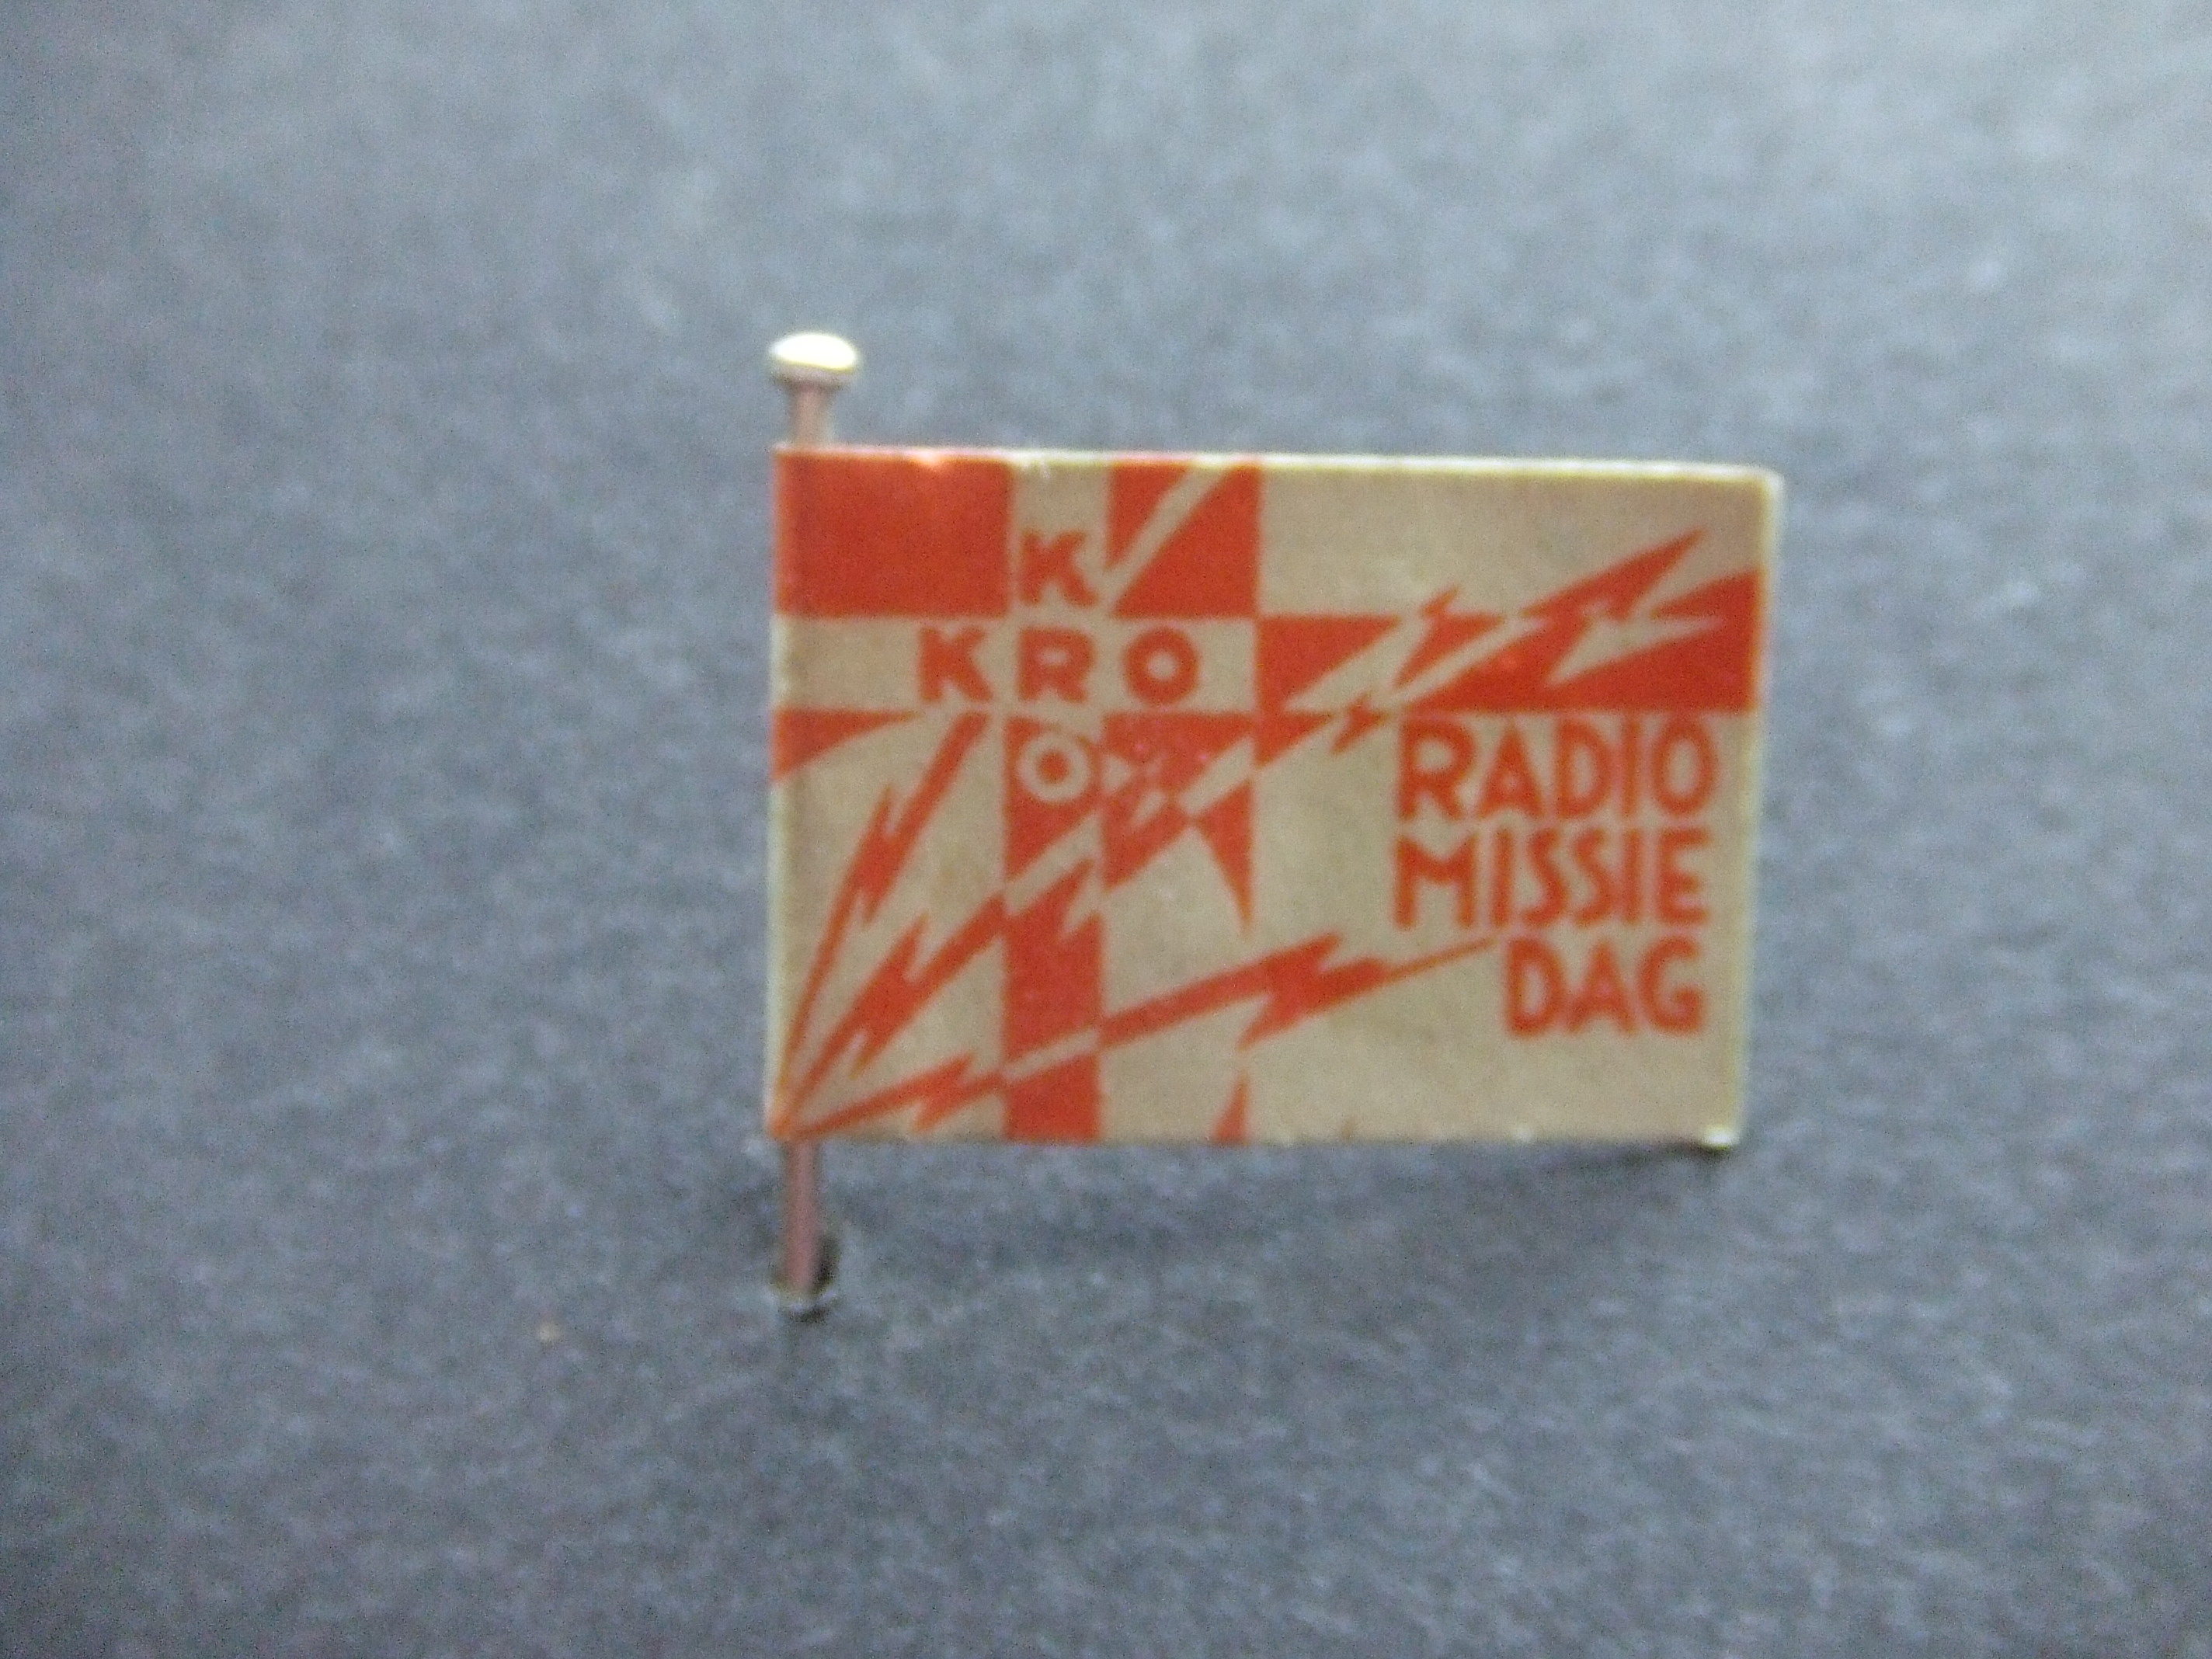 KRO Radio- Missiedag oud vlaggetje